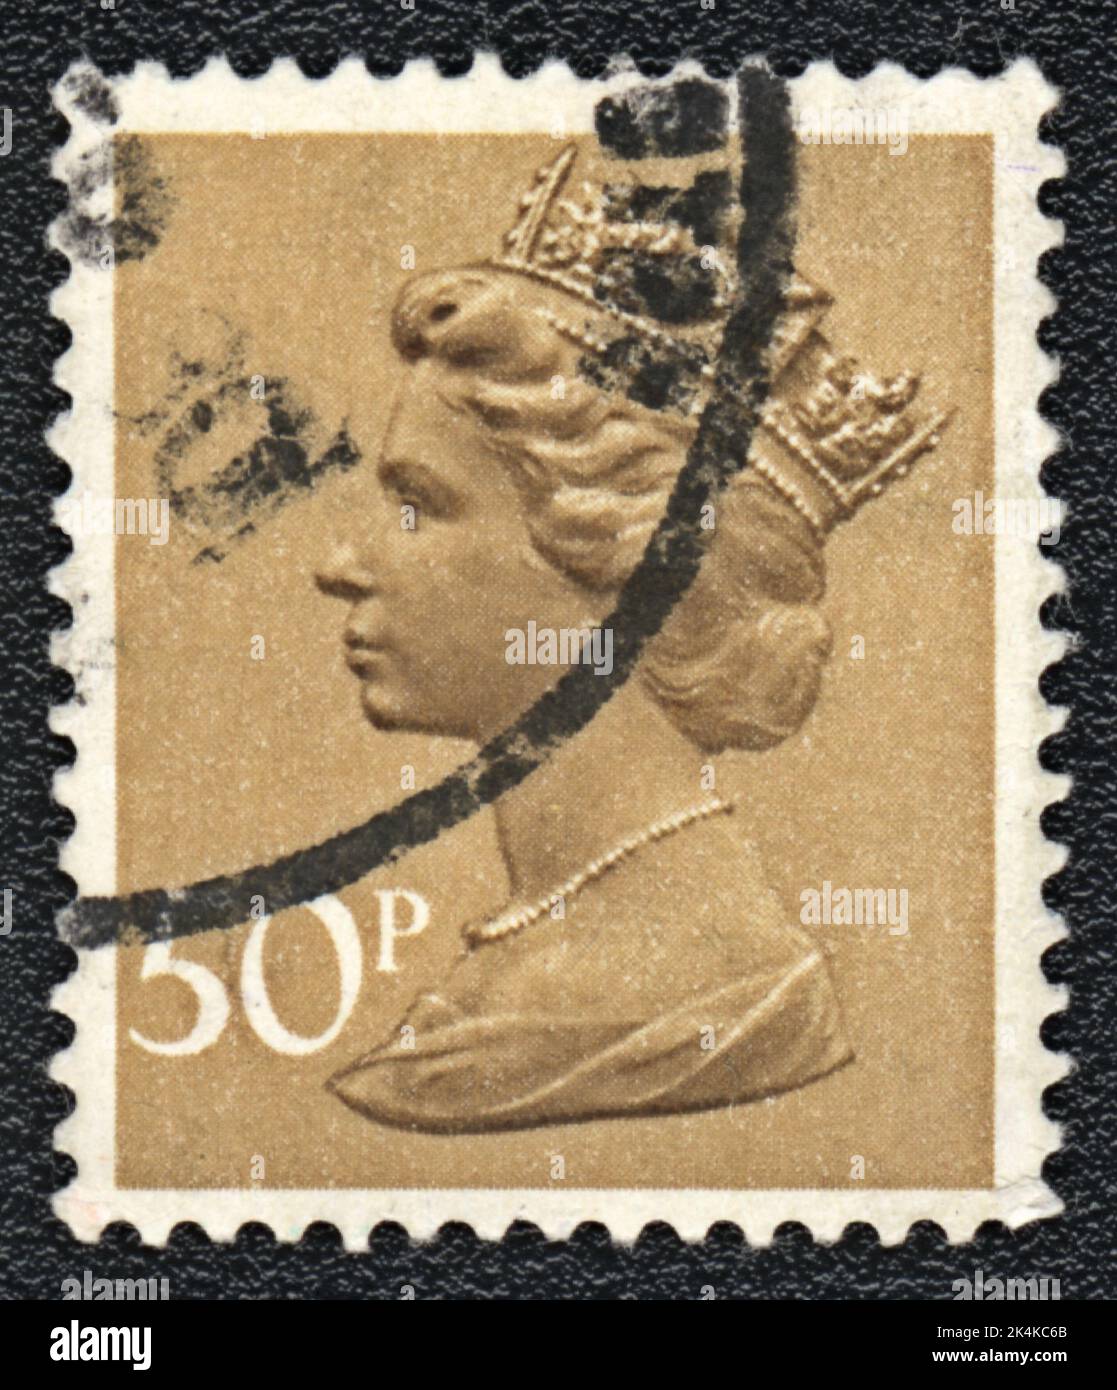 GRANDE-BRETAGNE - VERS 1976: Timbre imprimé par la Grande-Bretagne, montre Portrait de la reine Elizabeth 2 sur jaune, vers 1977 Banque D'Images